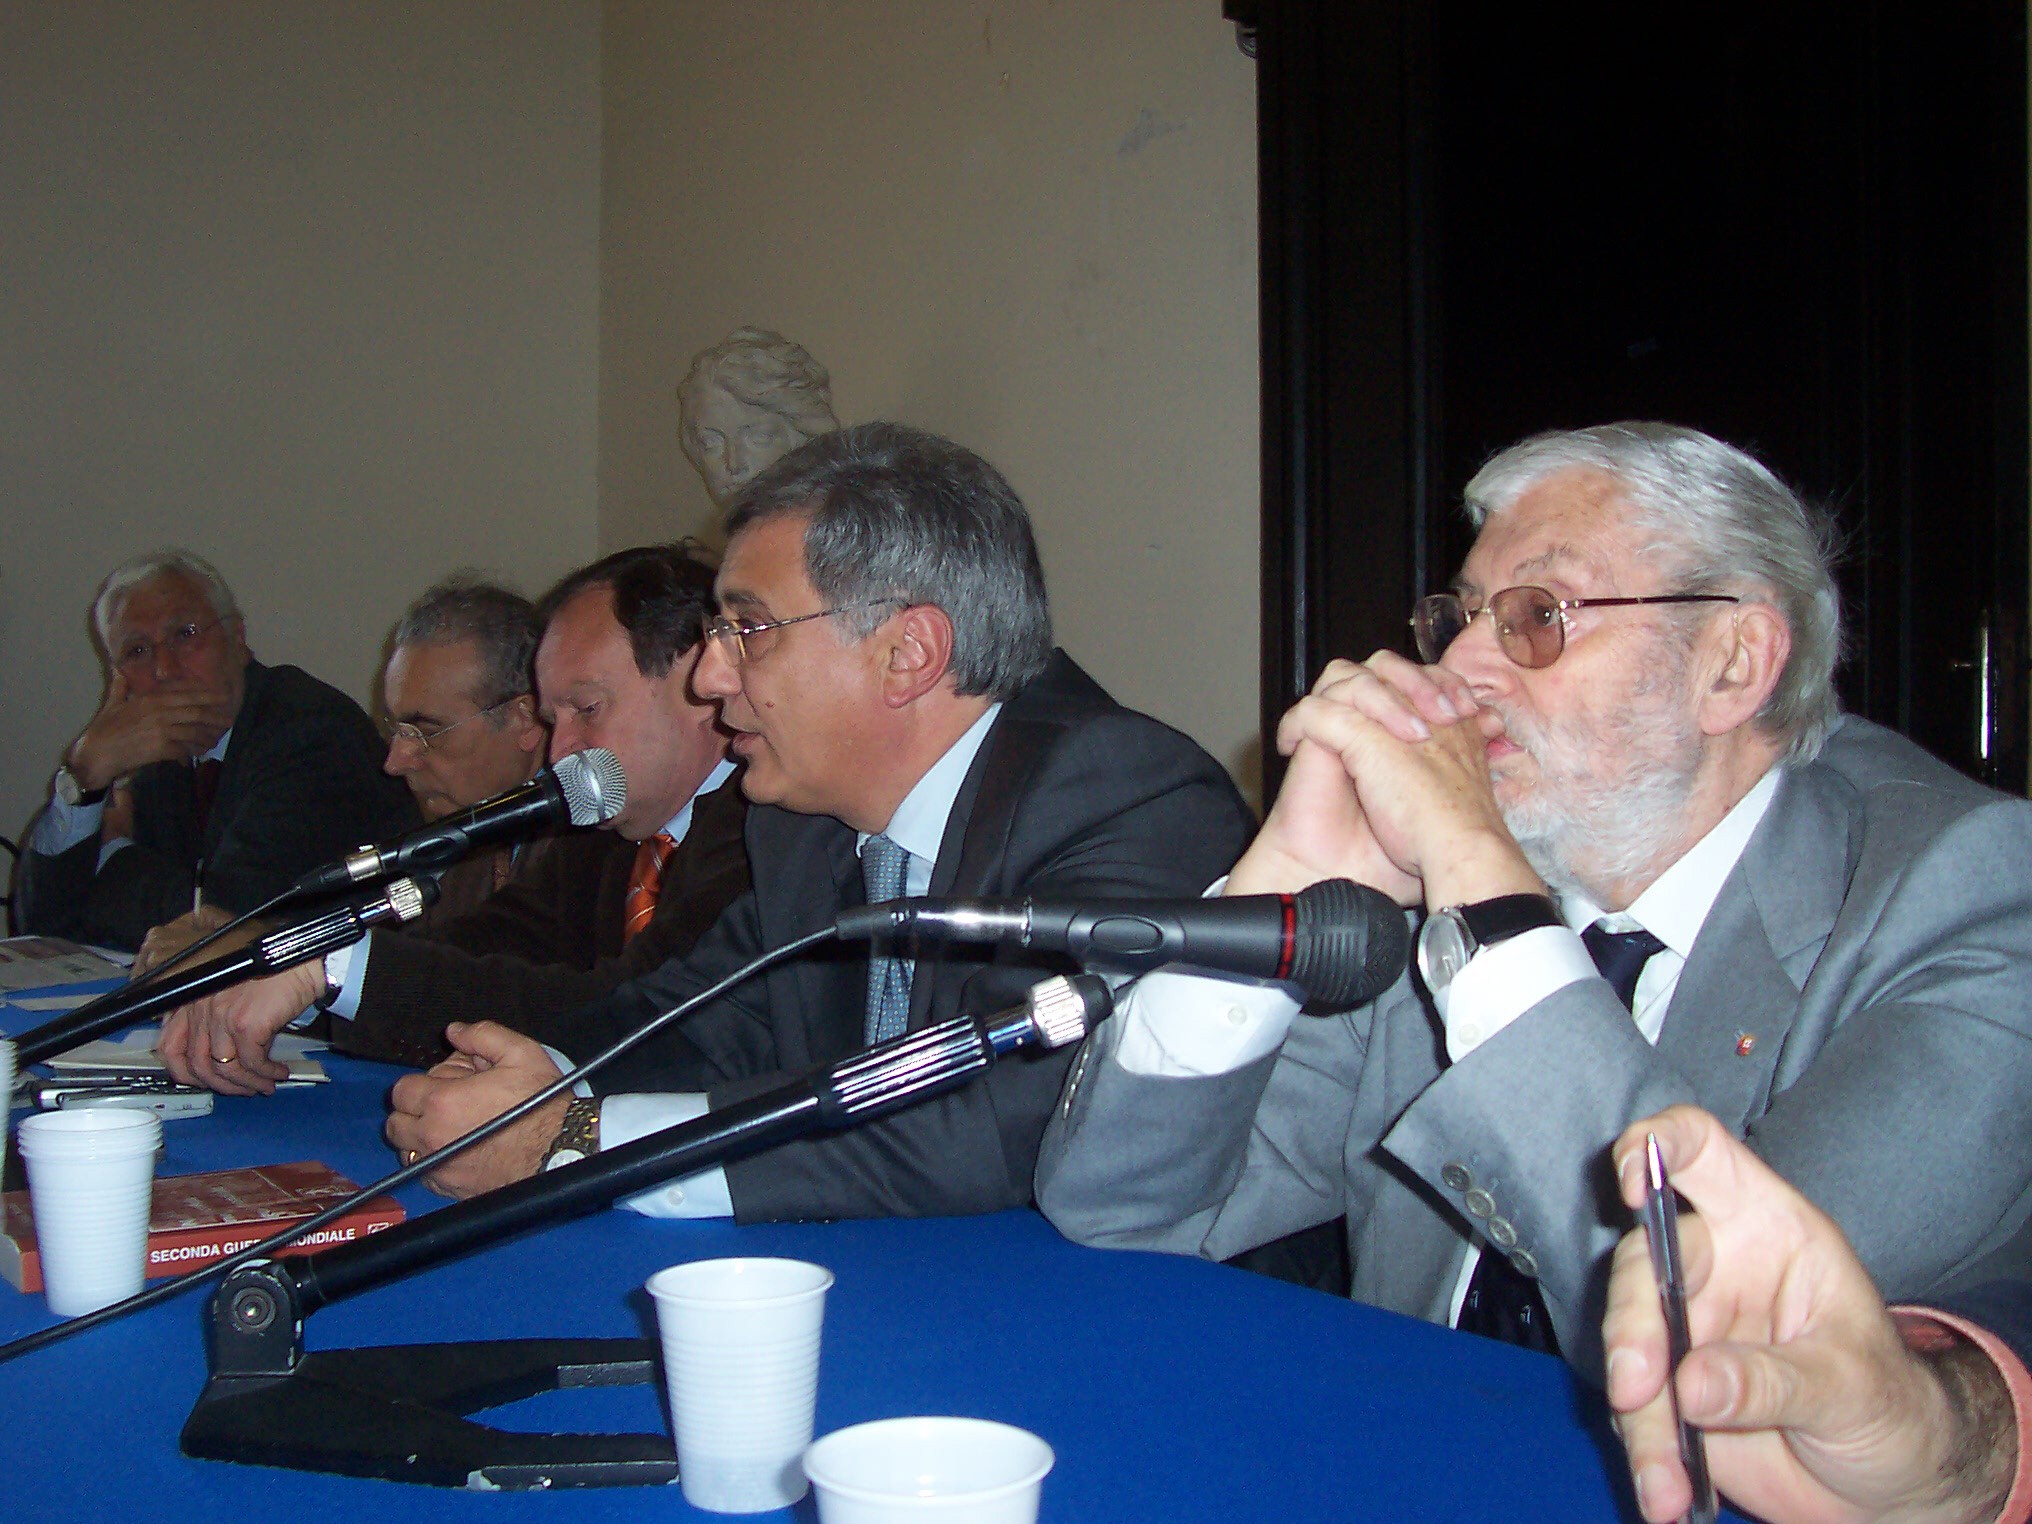 Presentazione del libro ’Napolitamo’, di Giannino Di Stasio - Sala dei Baroni, Napoli, 6 aprile 2008